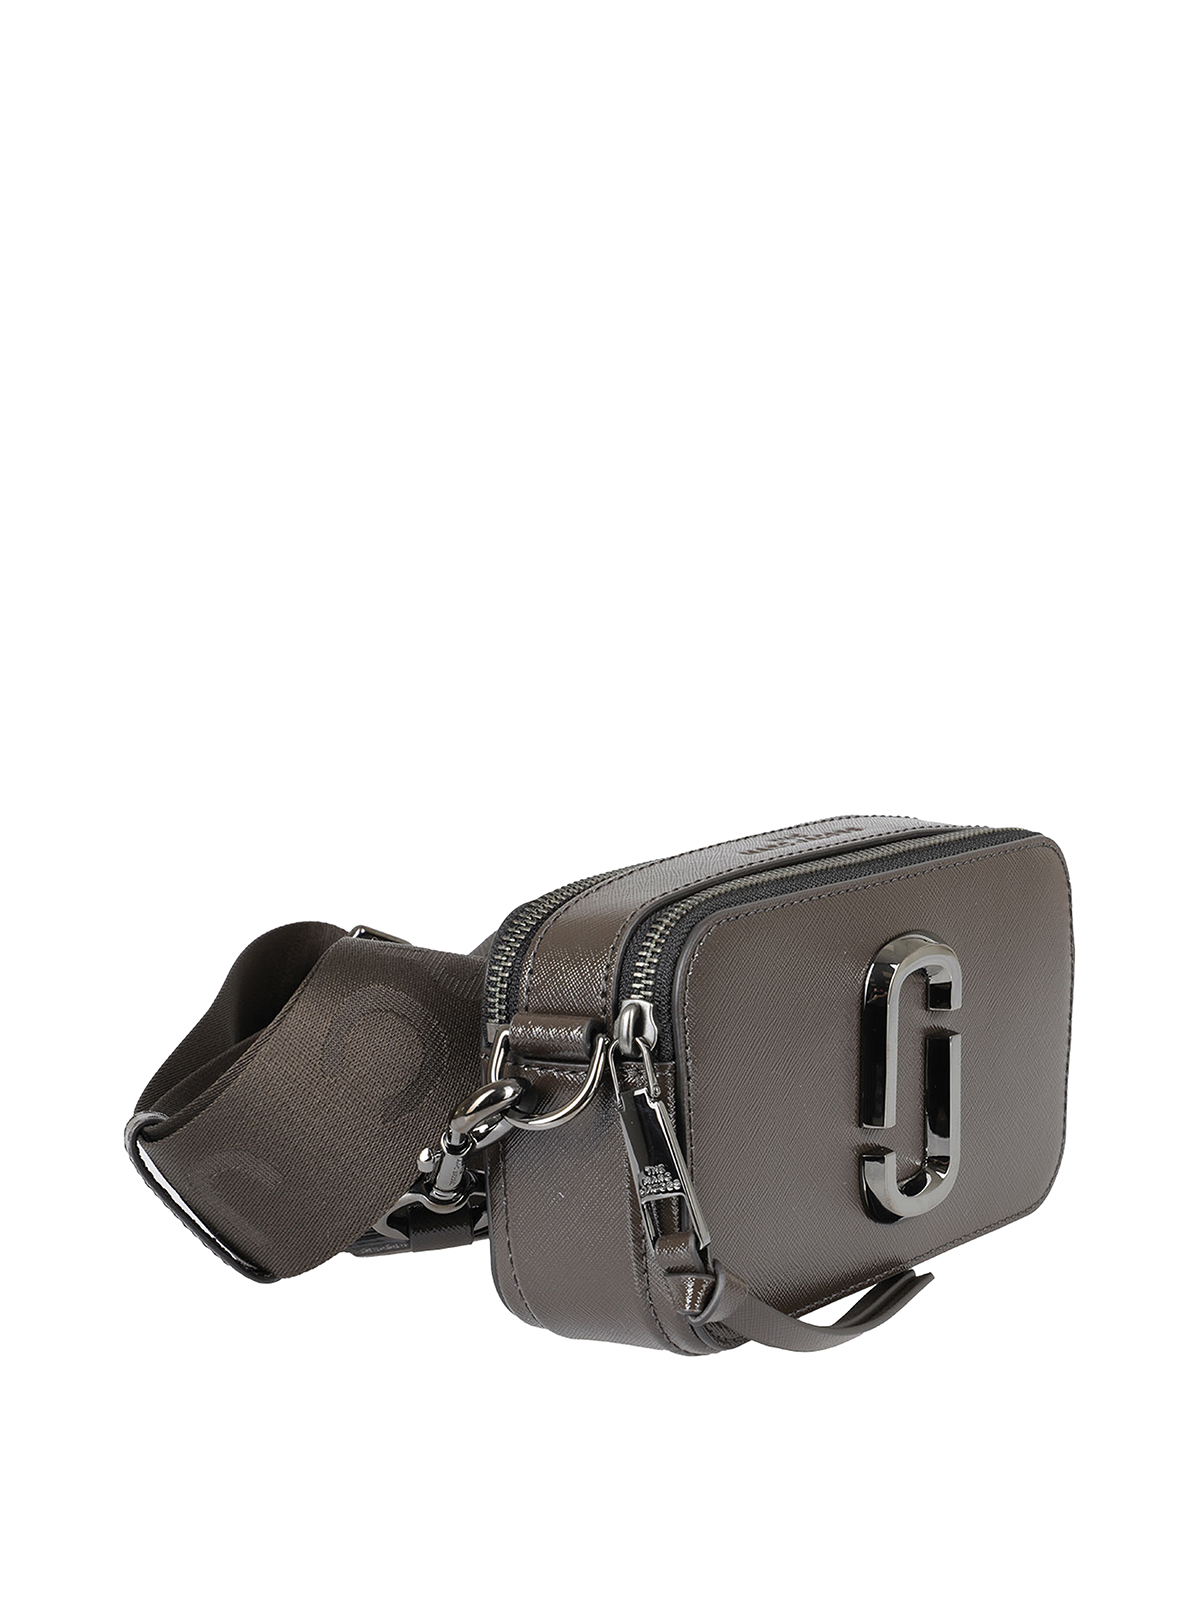 Snapshot DTM leather camera bag